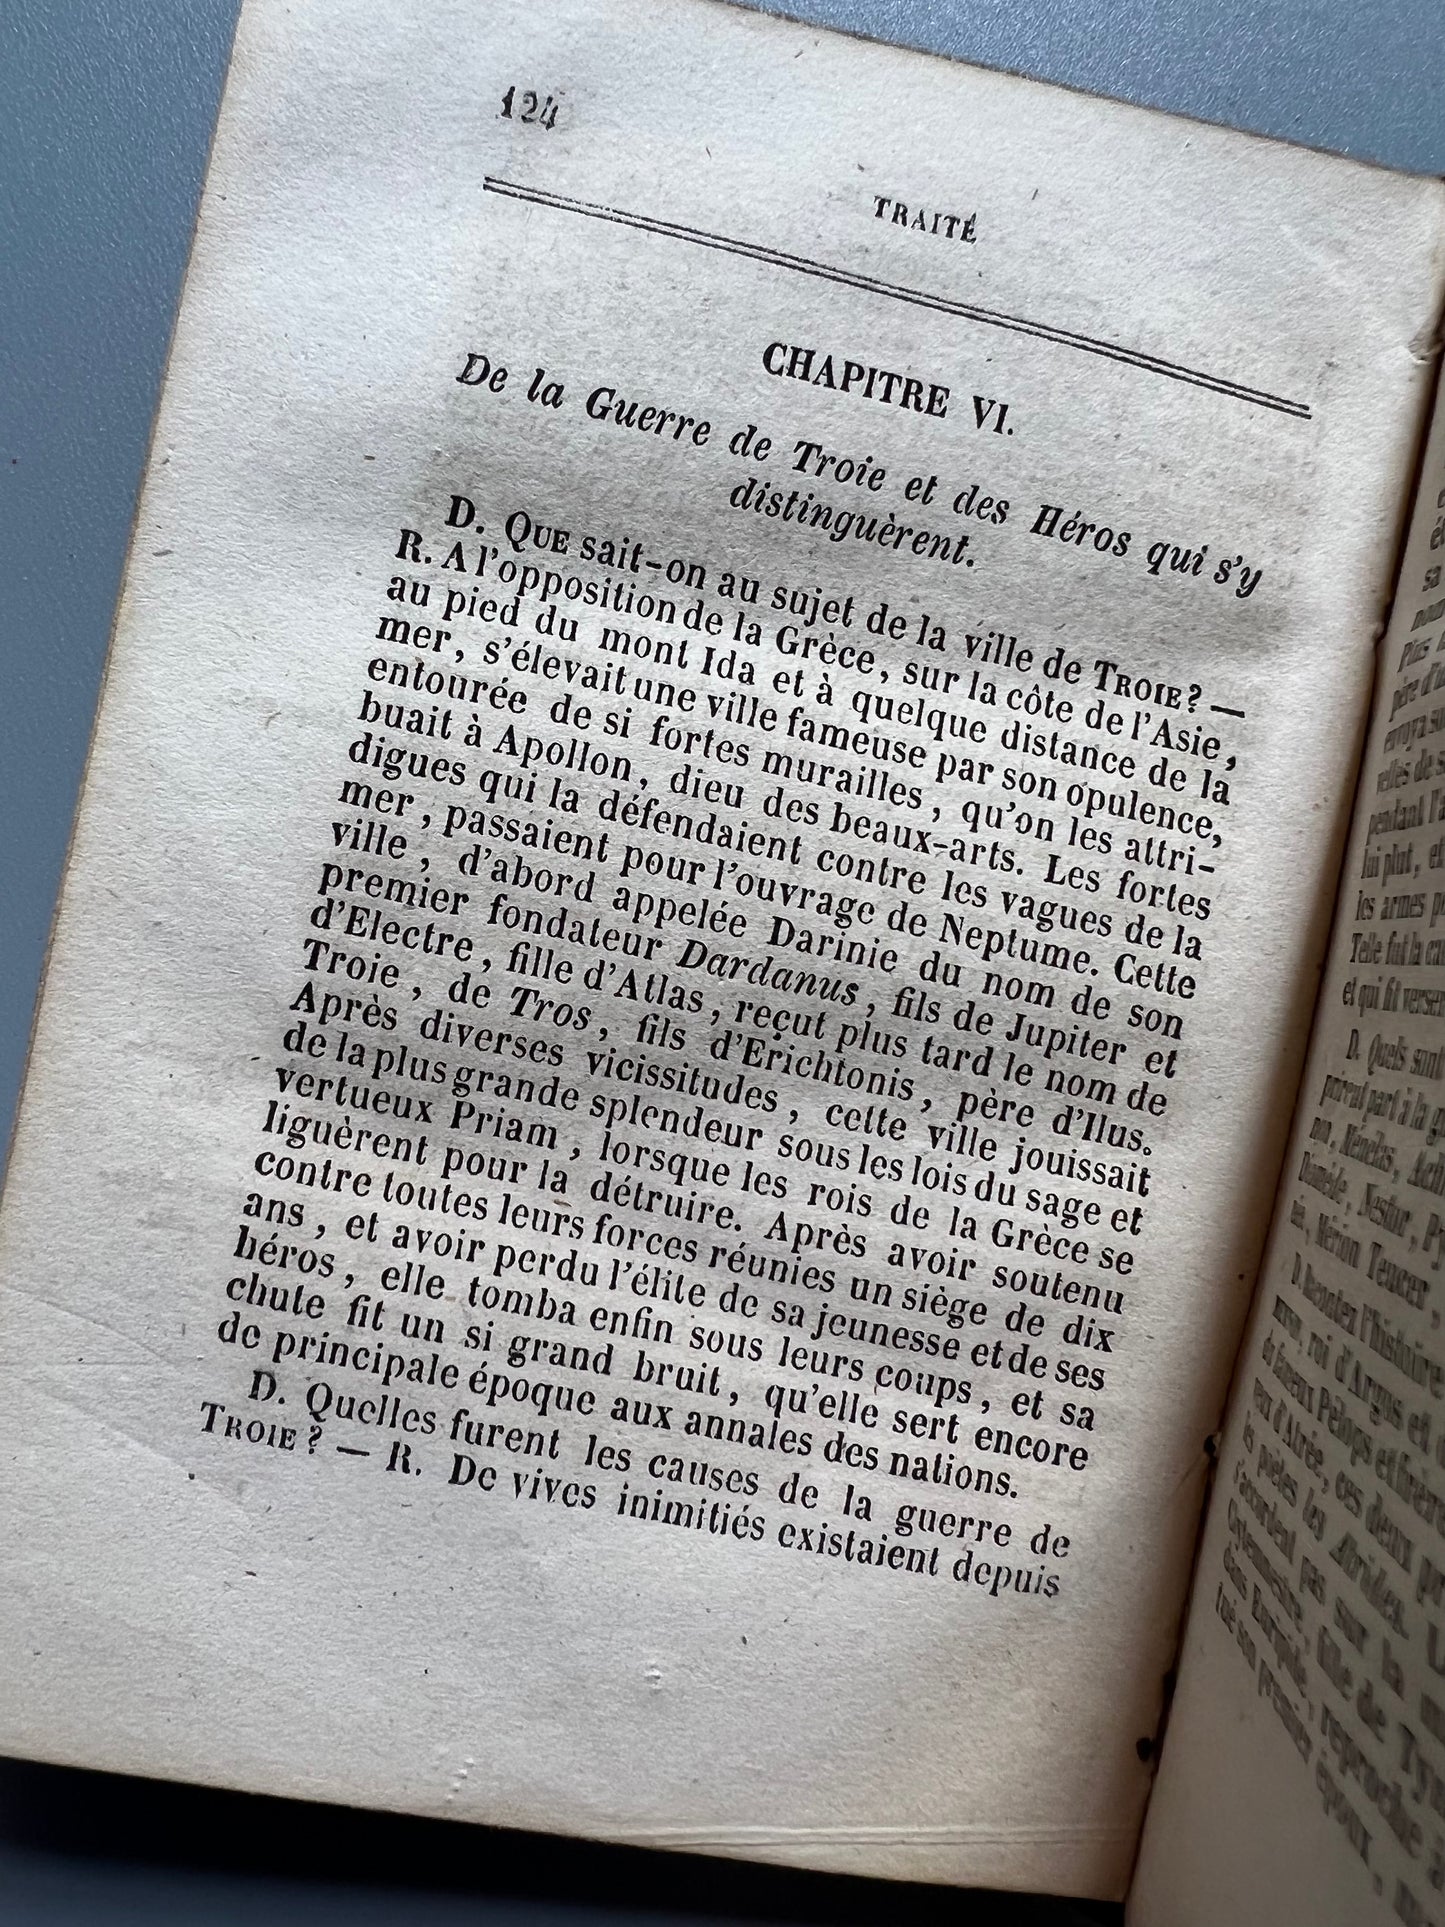 Traité élémentaire de mythologie, M. Bouchez - 1842